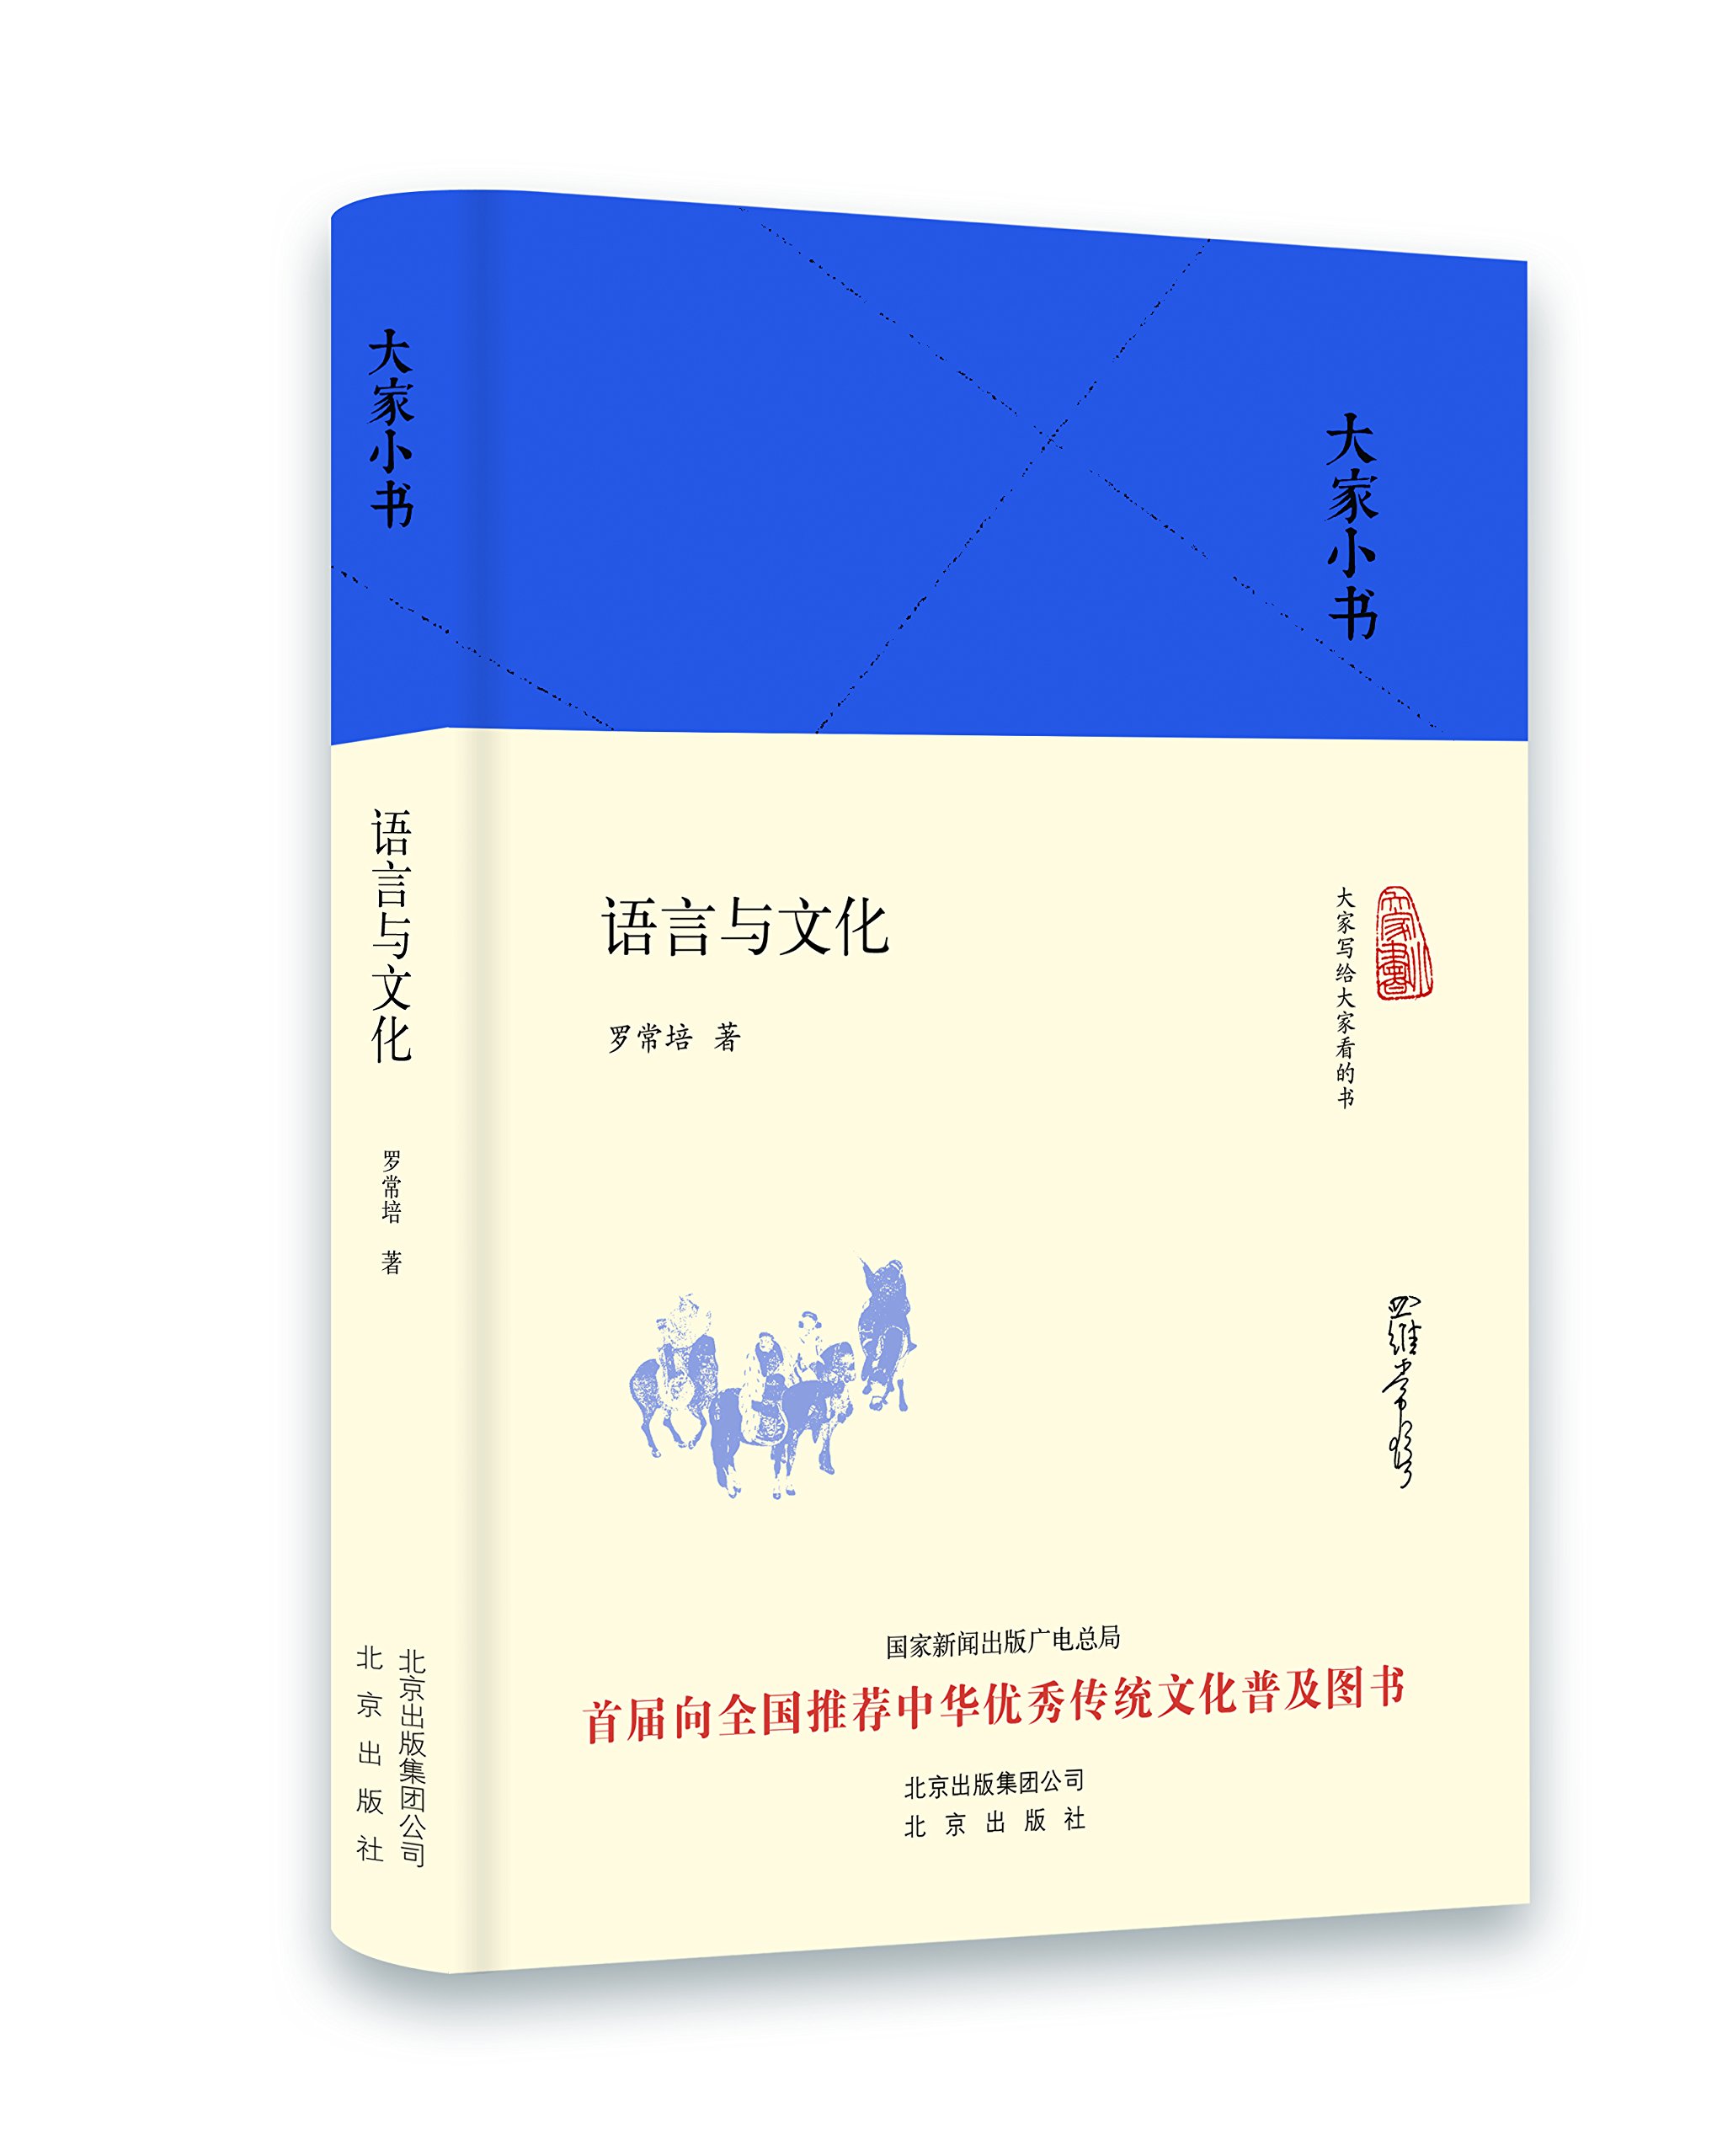 大家小书:语言与文化 精装 罗常培 著 北京出版社